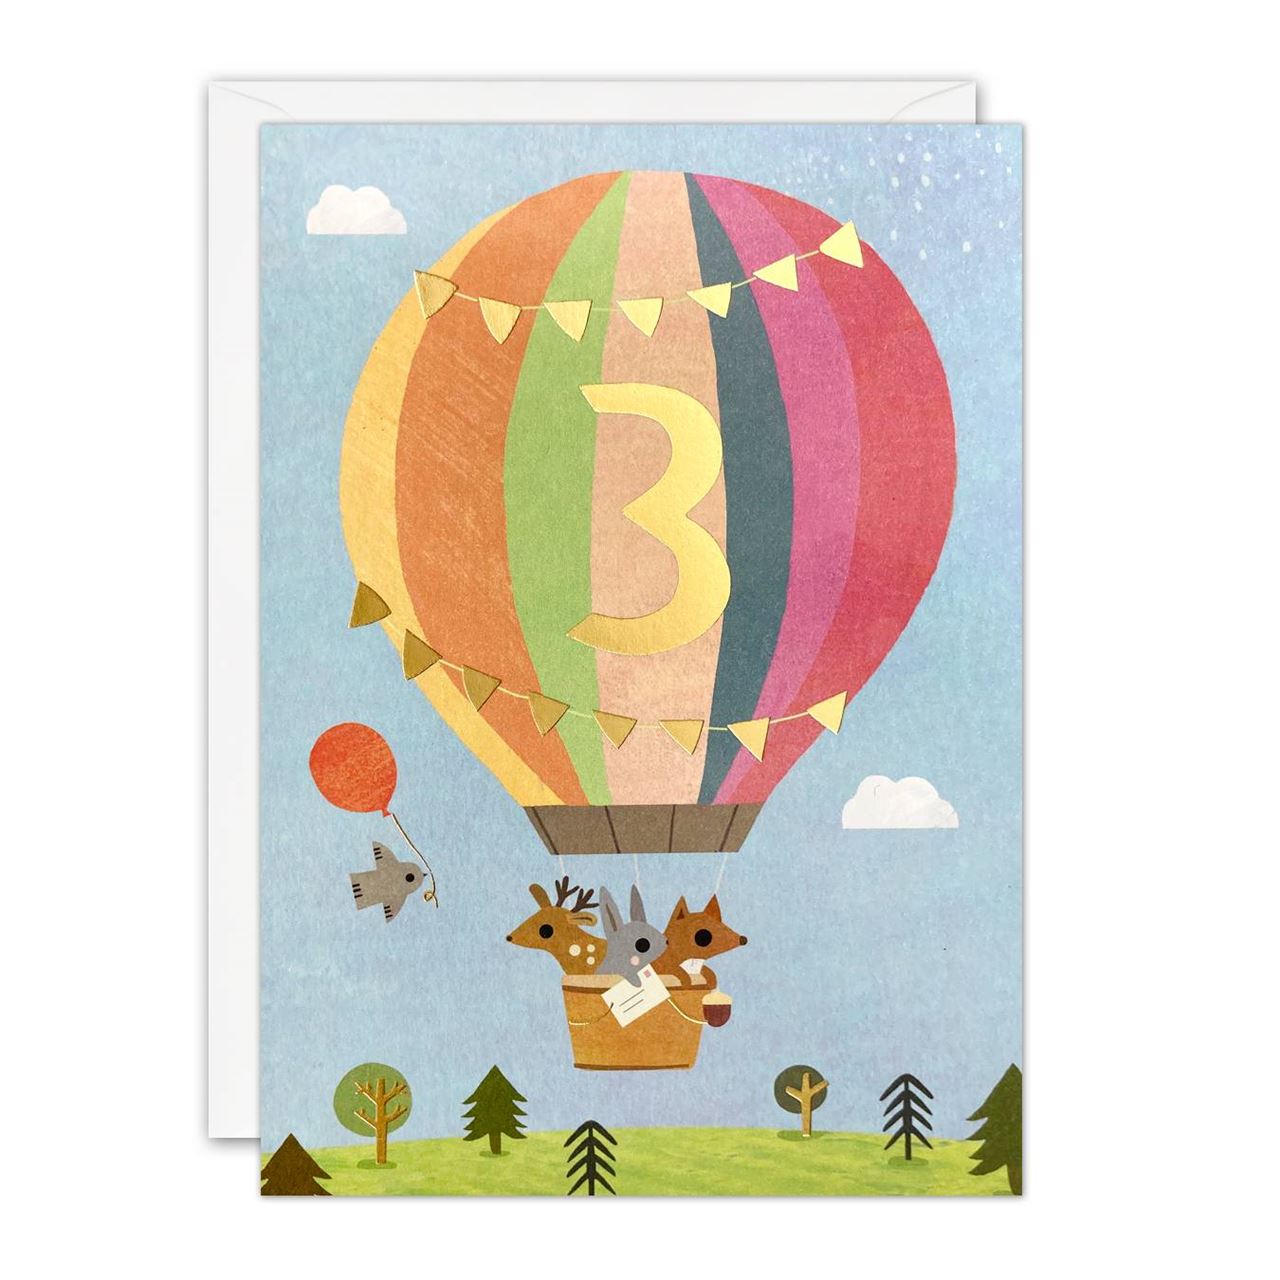 Hot Air Balloon Birthday Card - Age 3